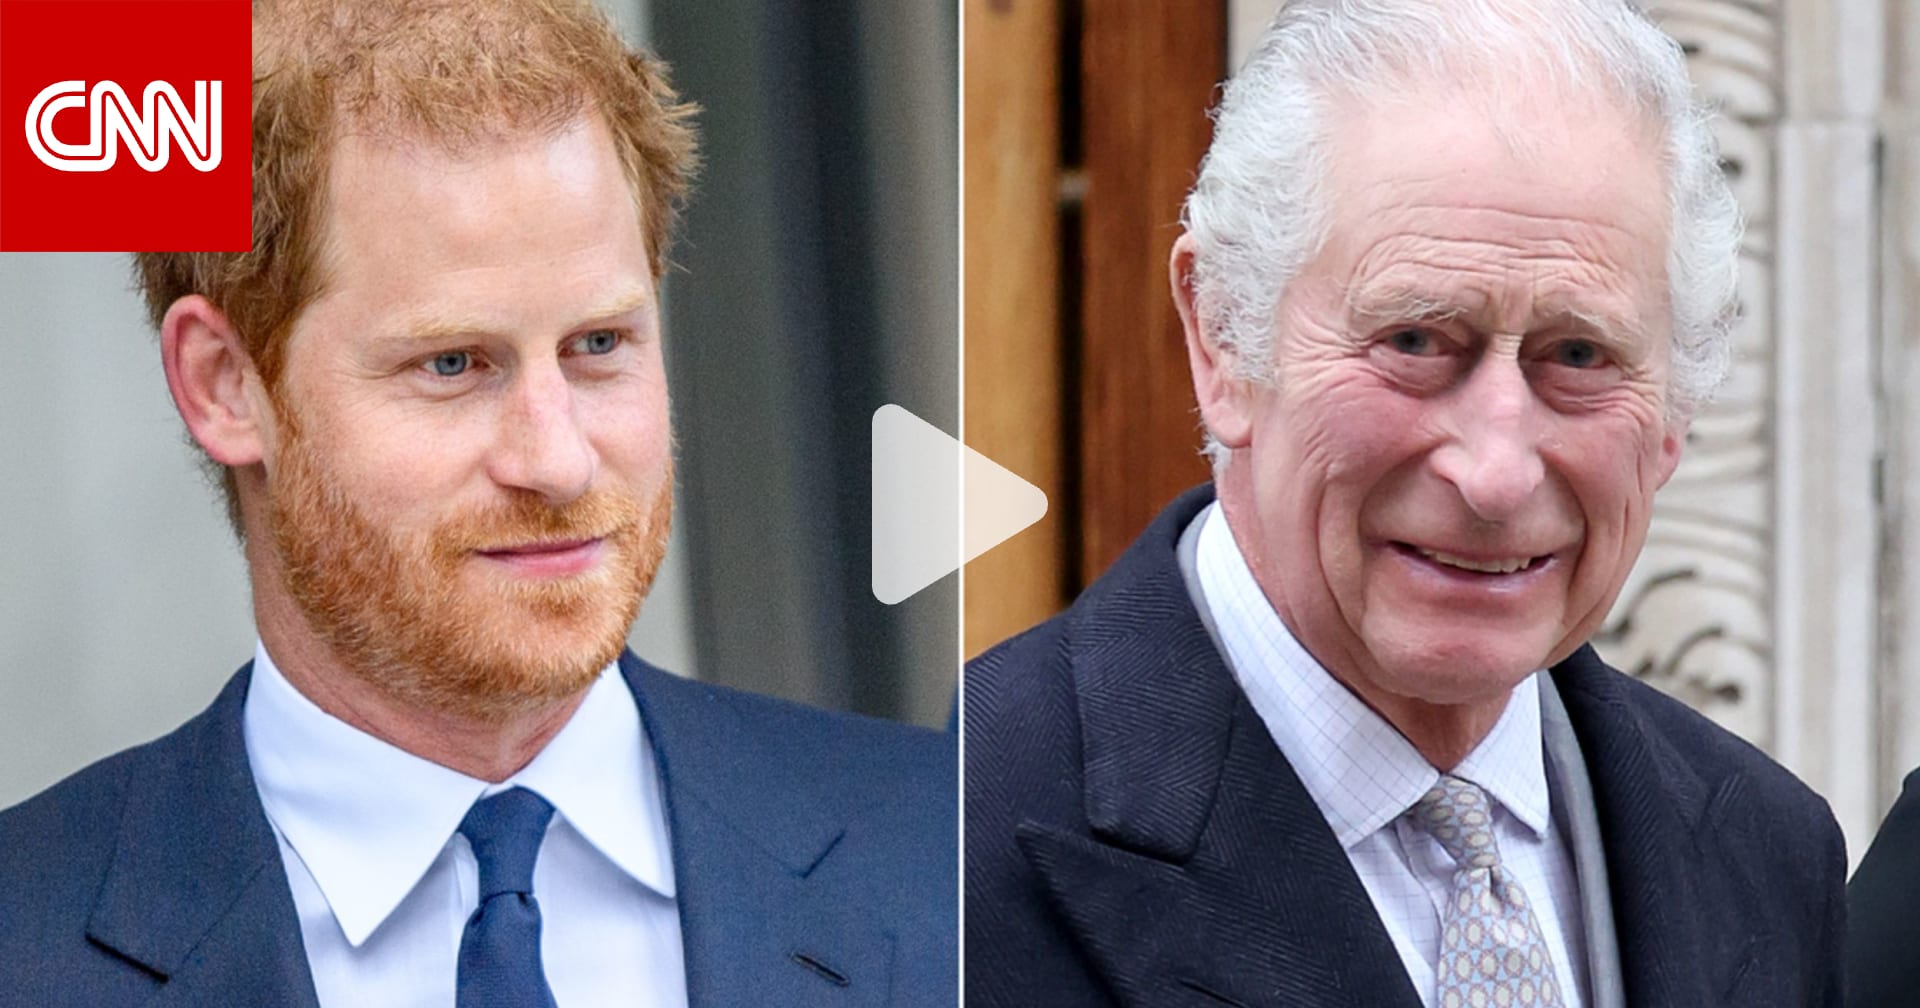 يأمل أن يساعد بـ"توحيد العائلة المالكة".. شاهد الأمير هاري يتحدث عن تشخيص إصابة الملك تشارلز بالسرطان